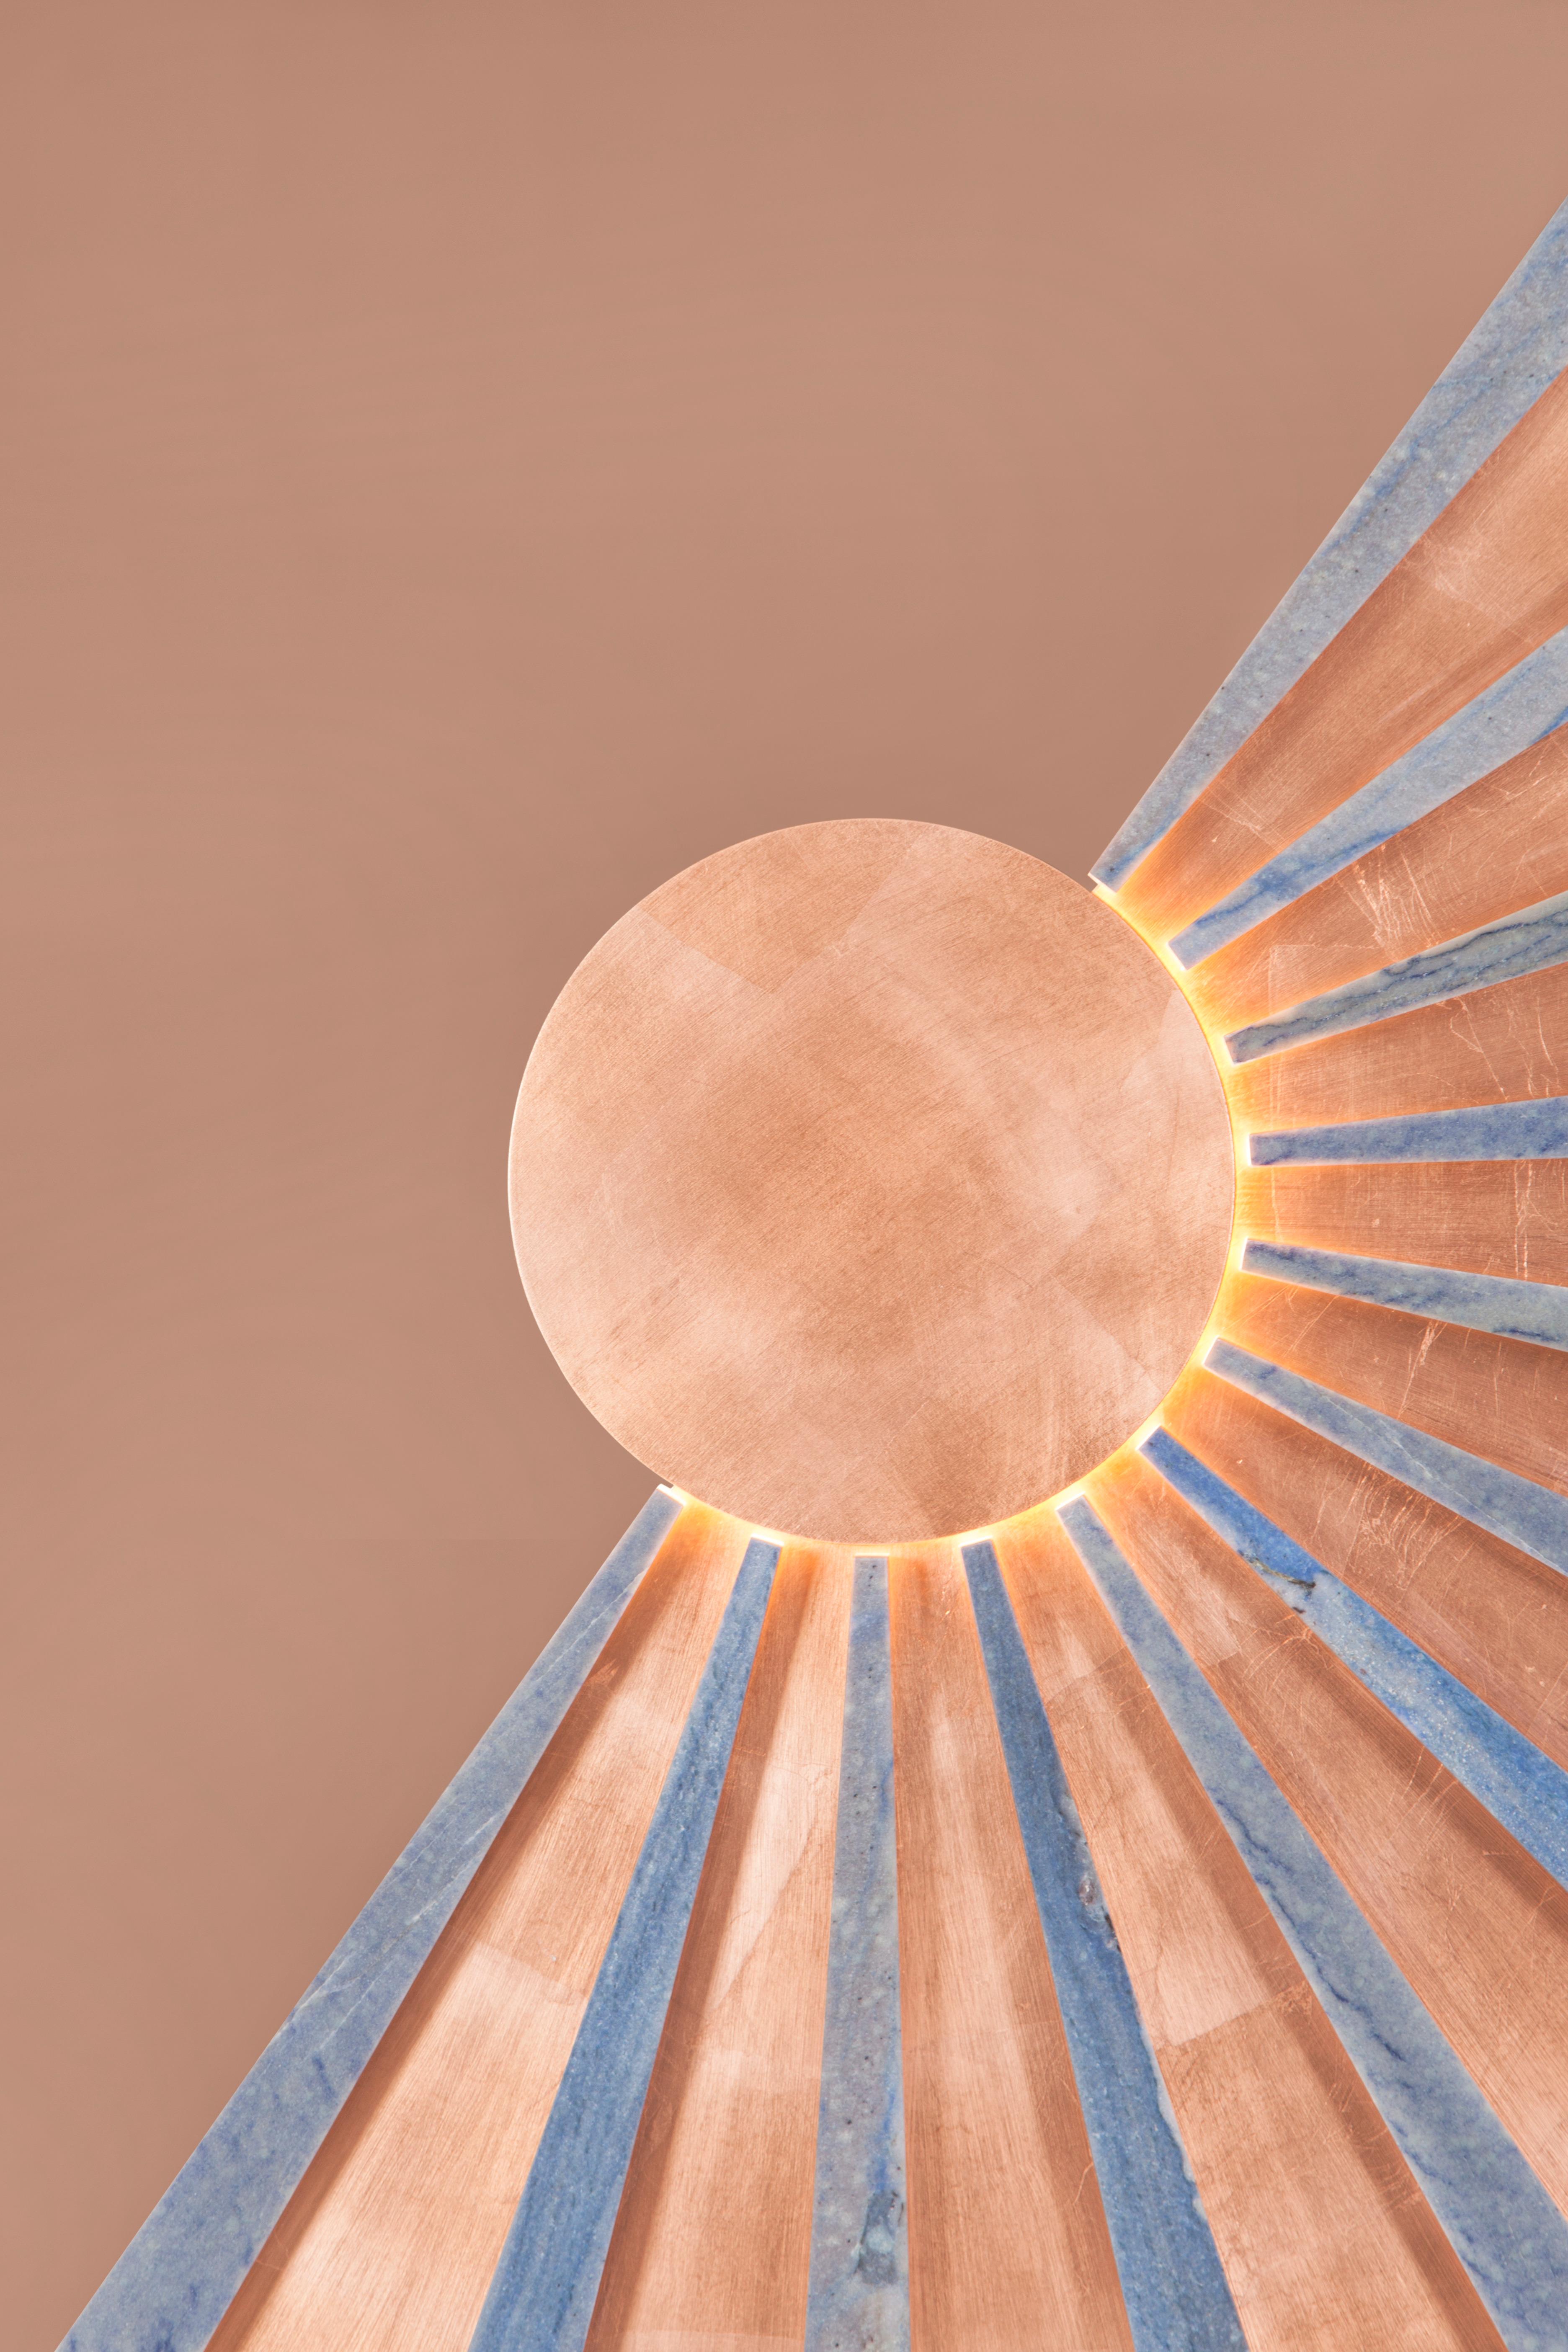 Miroir mural solaire, Collection Contemporary, Fabriqué à la main au Portugal - Europe par Greenapple.

Le miroir mural moderne Solar évoque les couchers de soleil dorés hypnotiques avec son allure chaleureuse et lumineuse. Reflet d'un savoir-faire